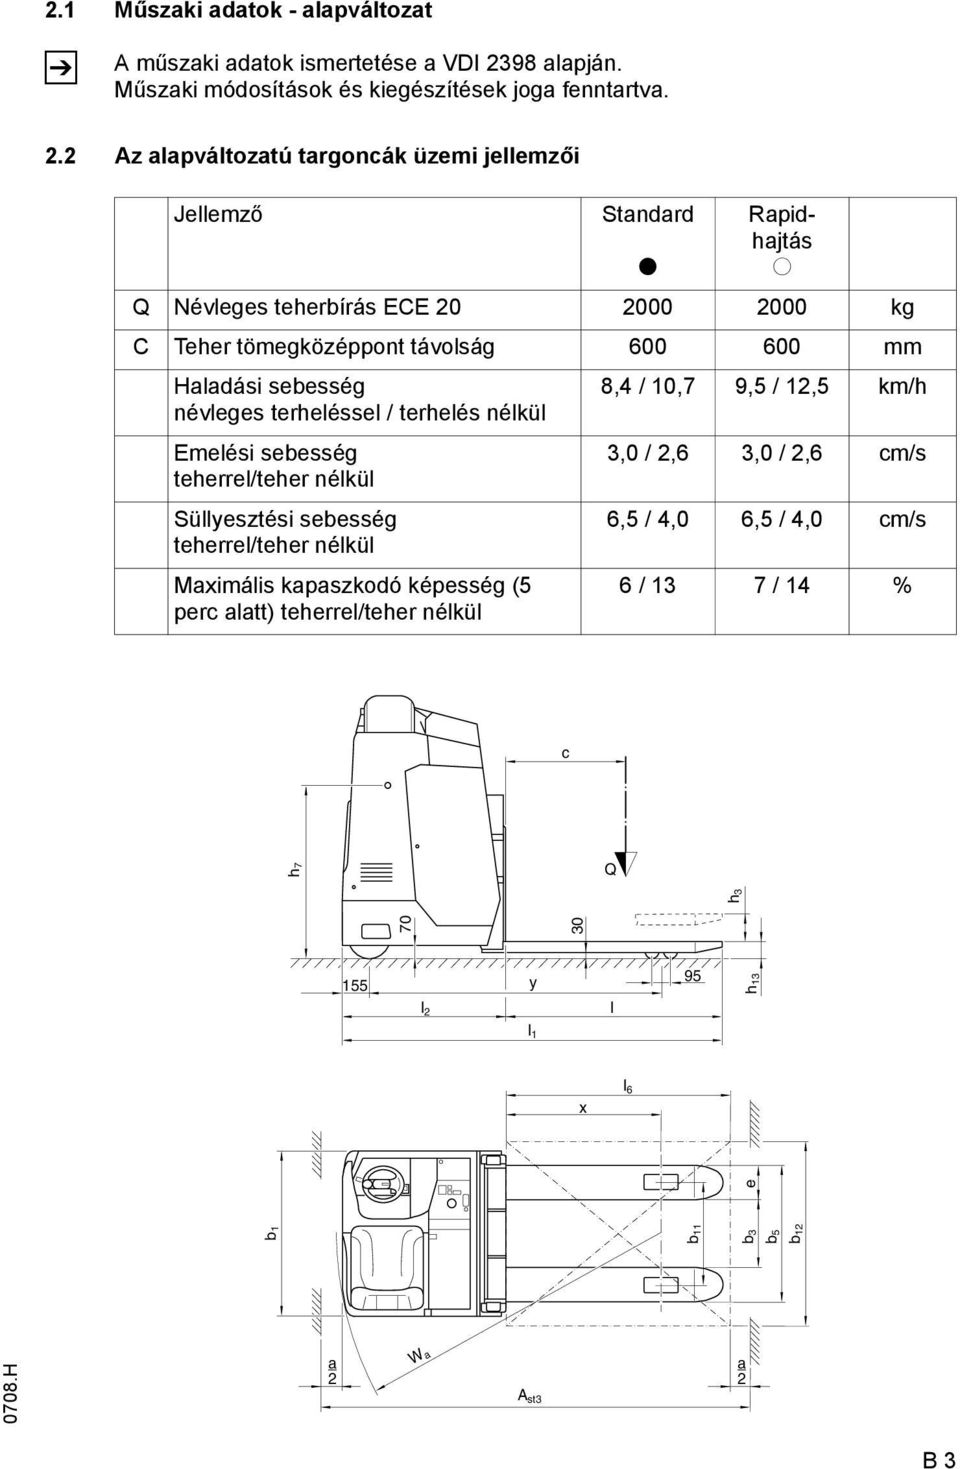 2 Az alapváltozatú targoncák üzemi jellemzői Jellemző Standard t Rapidhajtás o Q Névleges teherbírás ECE 20 2000 2000 kg C Teher tömegközéppont távolság 600 600 mm Haladási